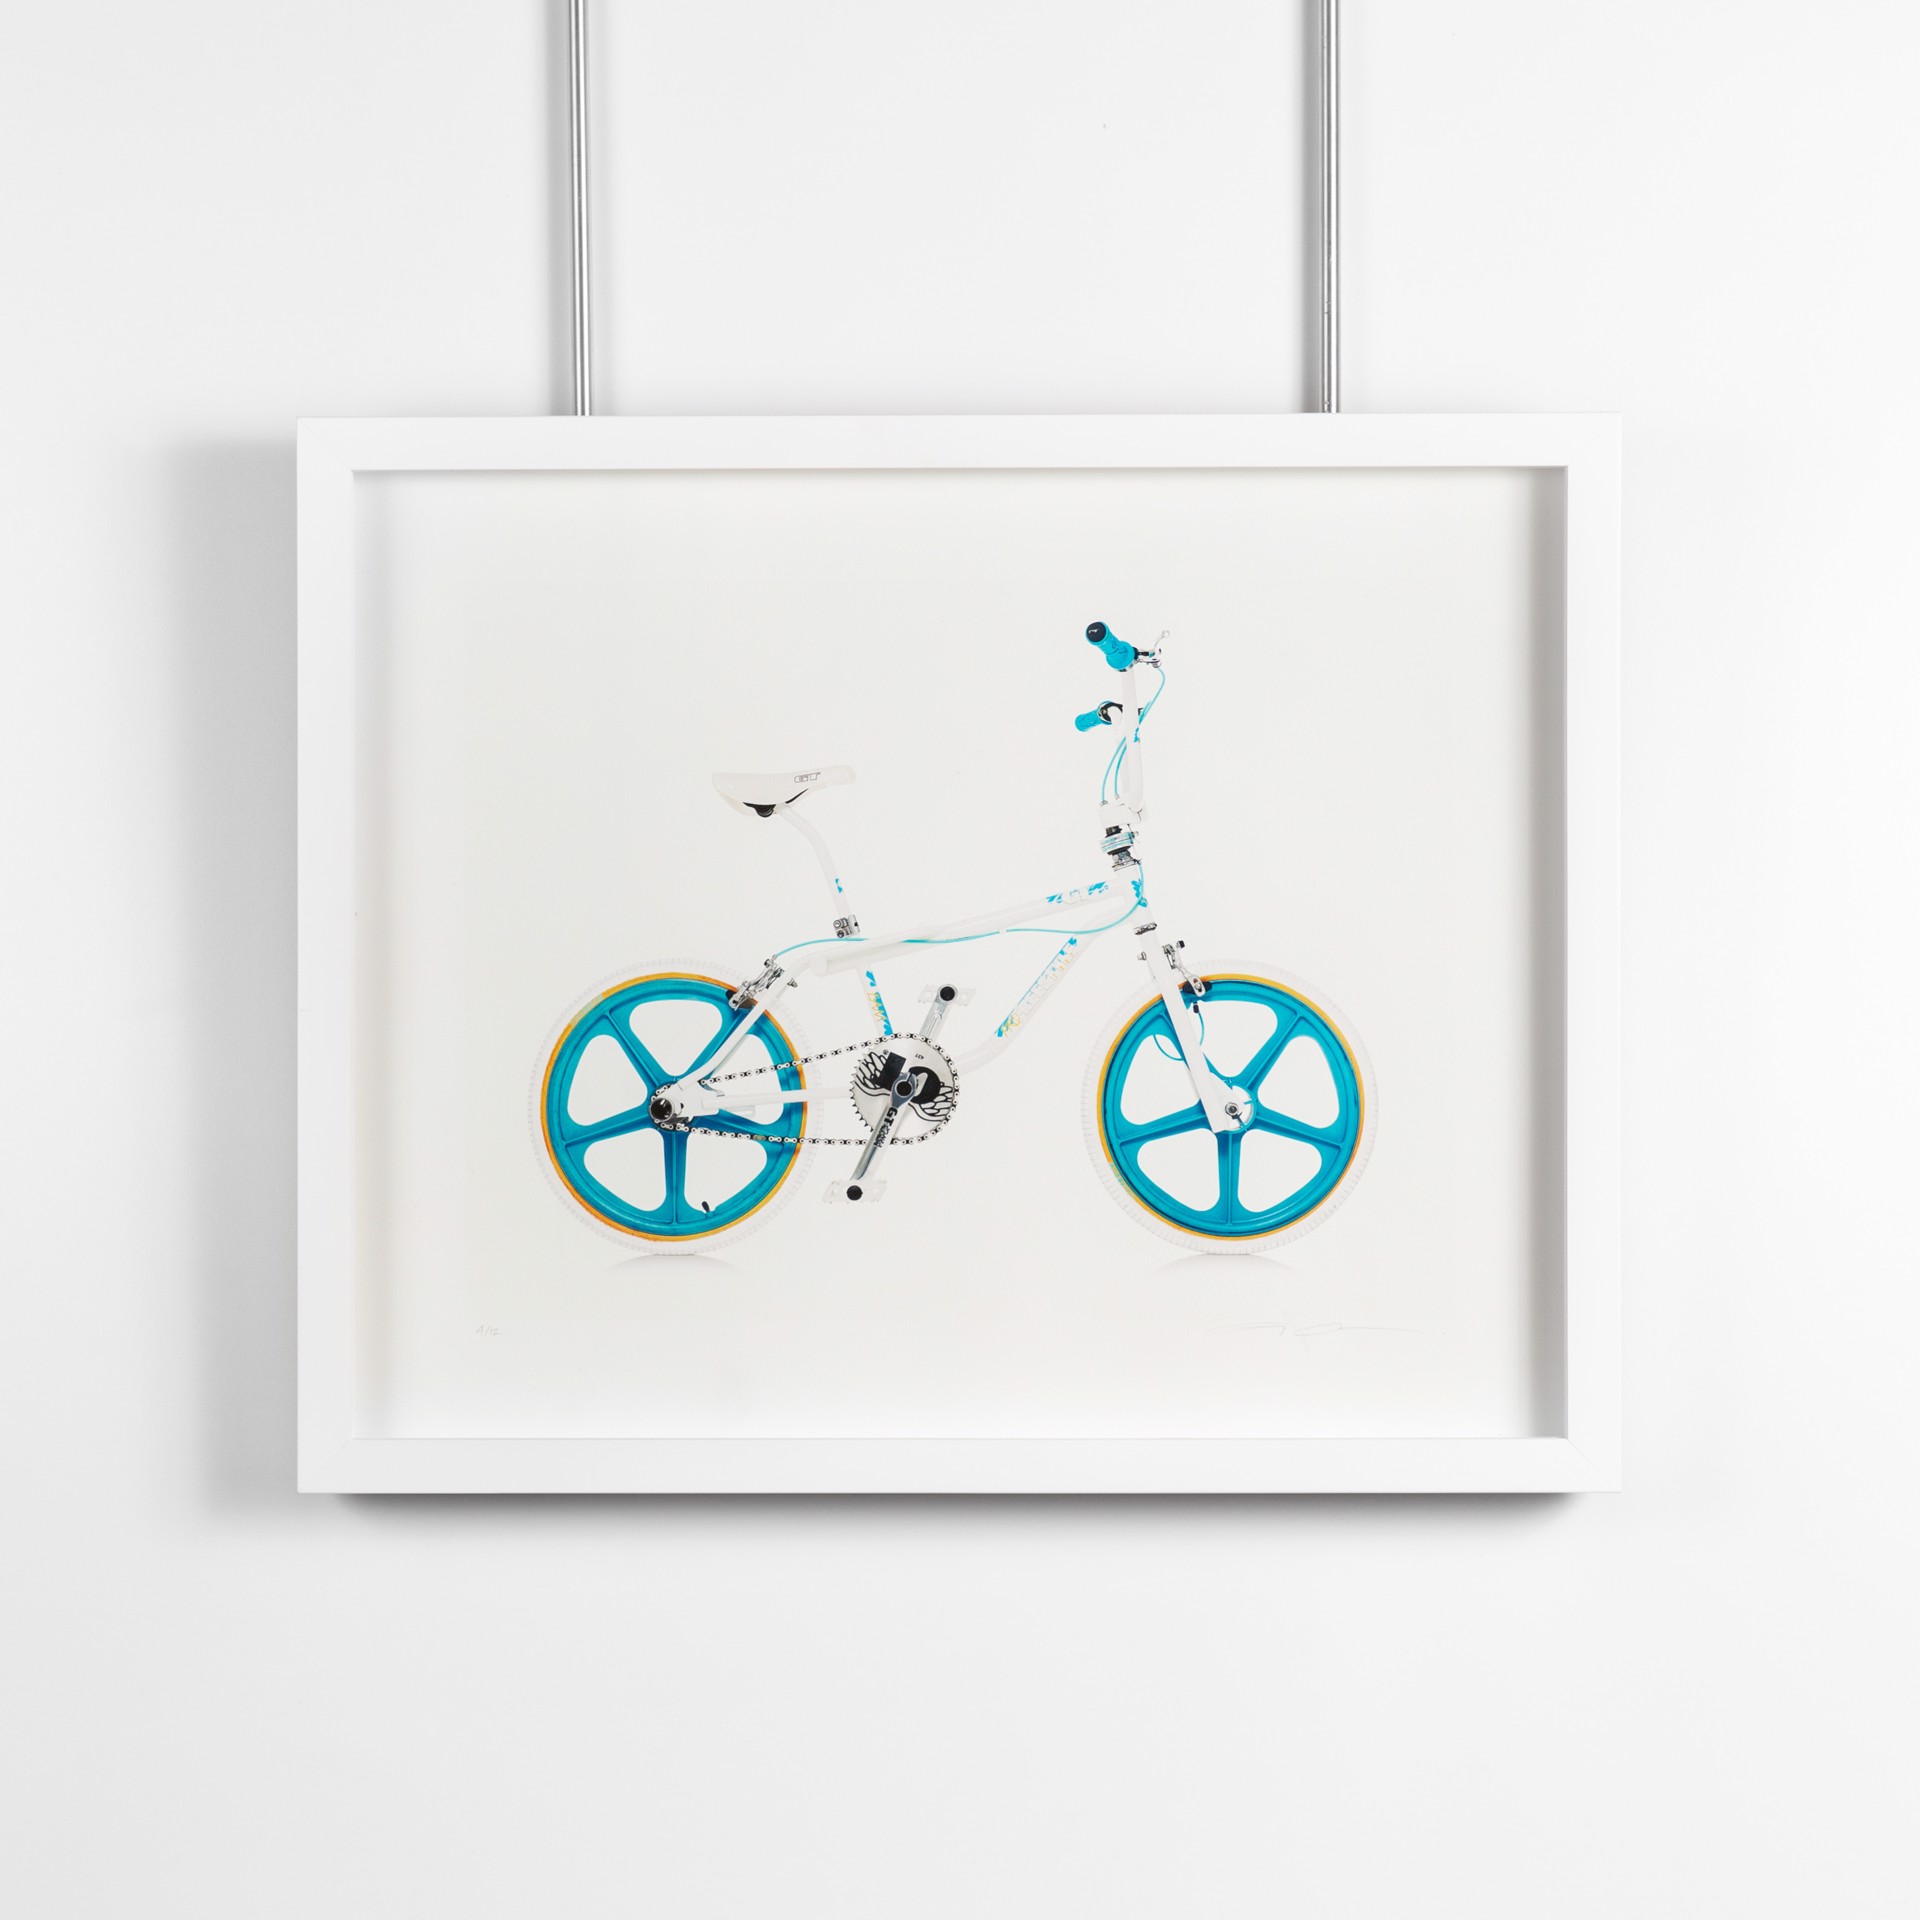 SV-A / 5 by Lyle Owerko | Bikes